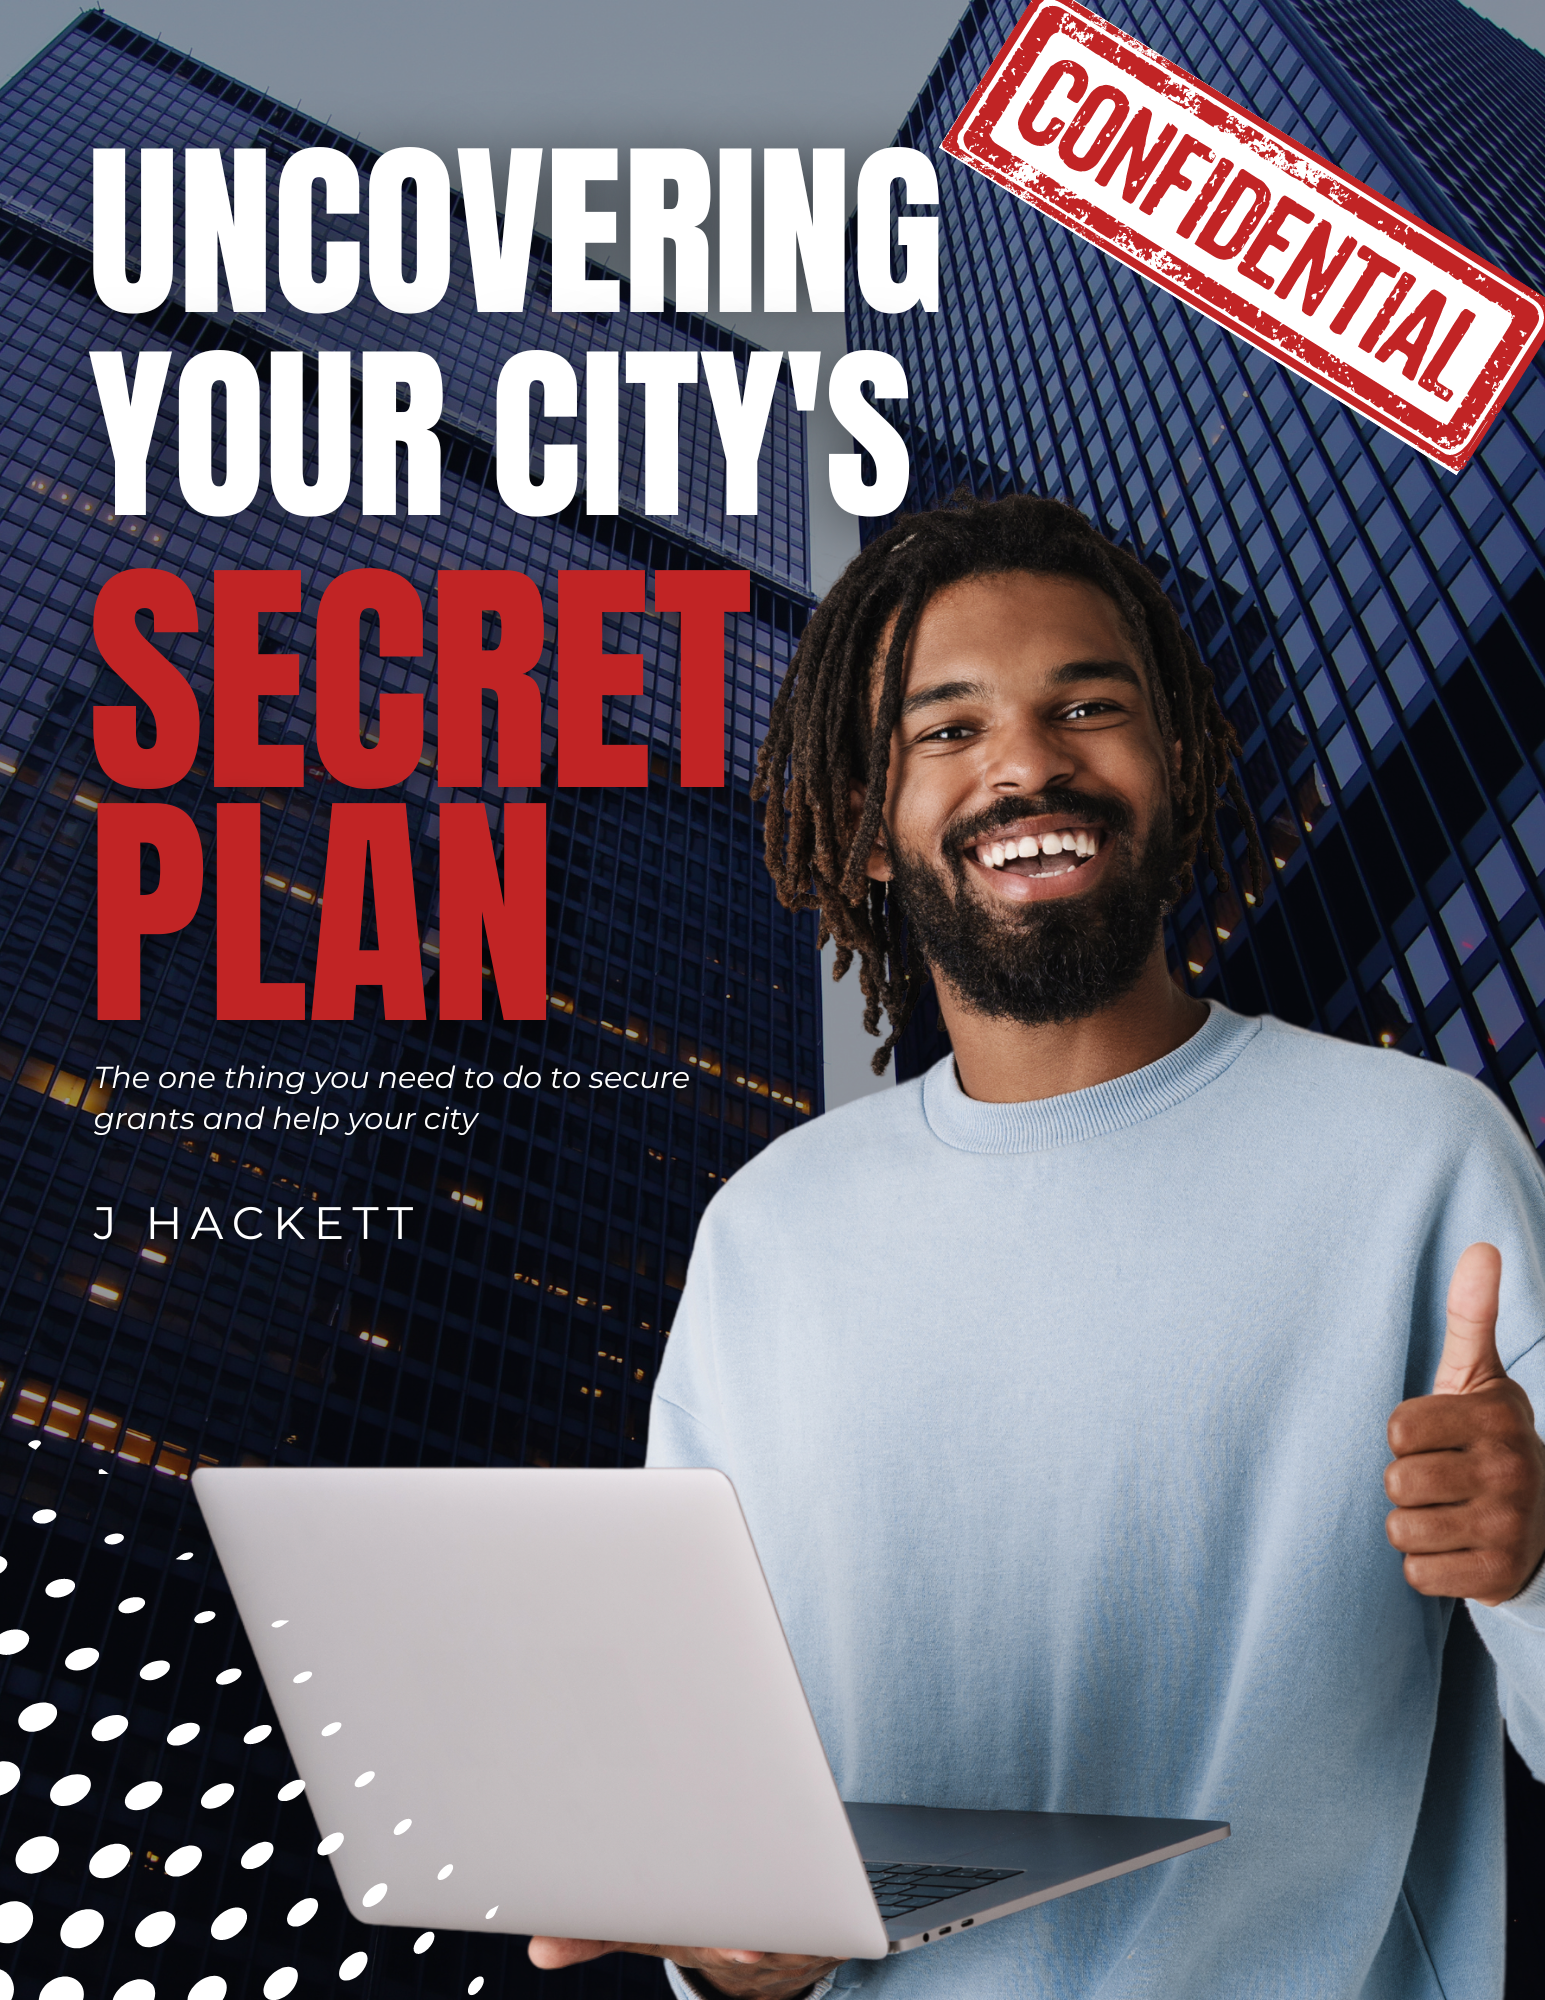 City's　Hackett　Uncovering　Shop　Plan　Your　Secret　–